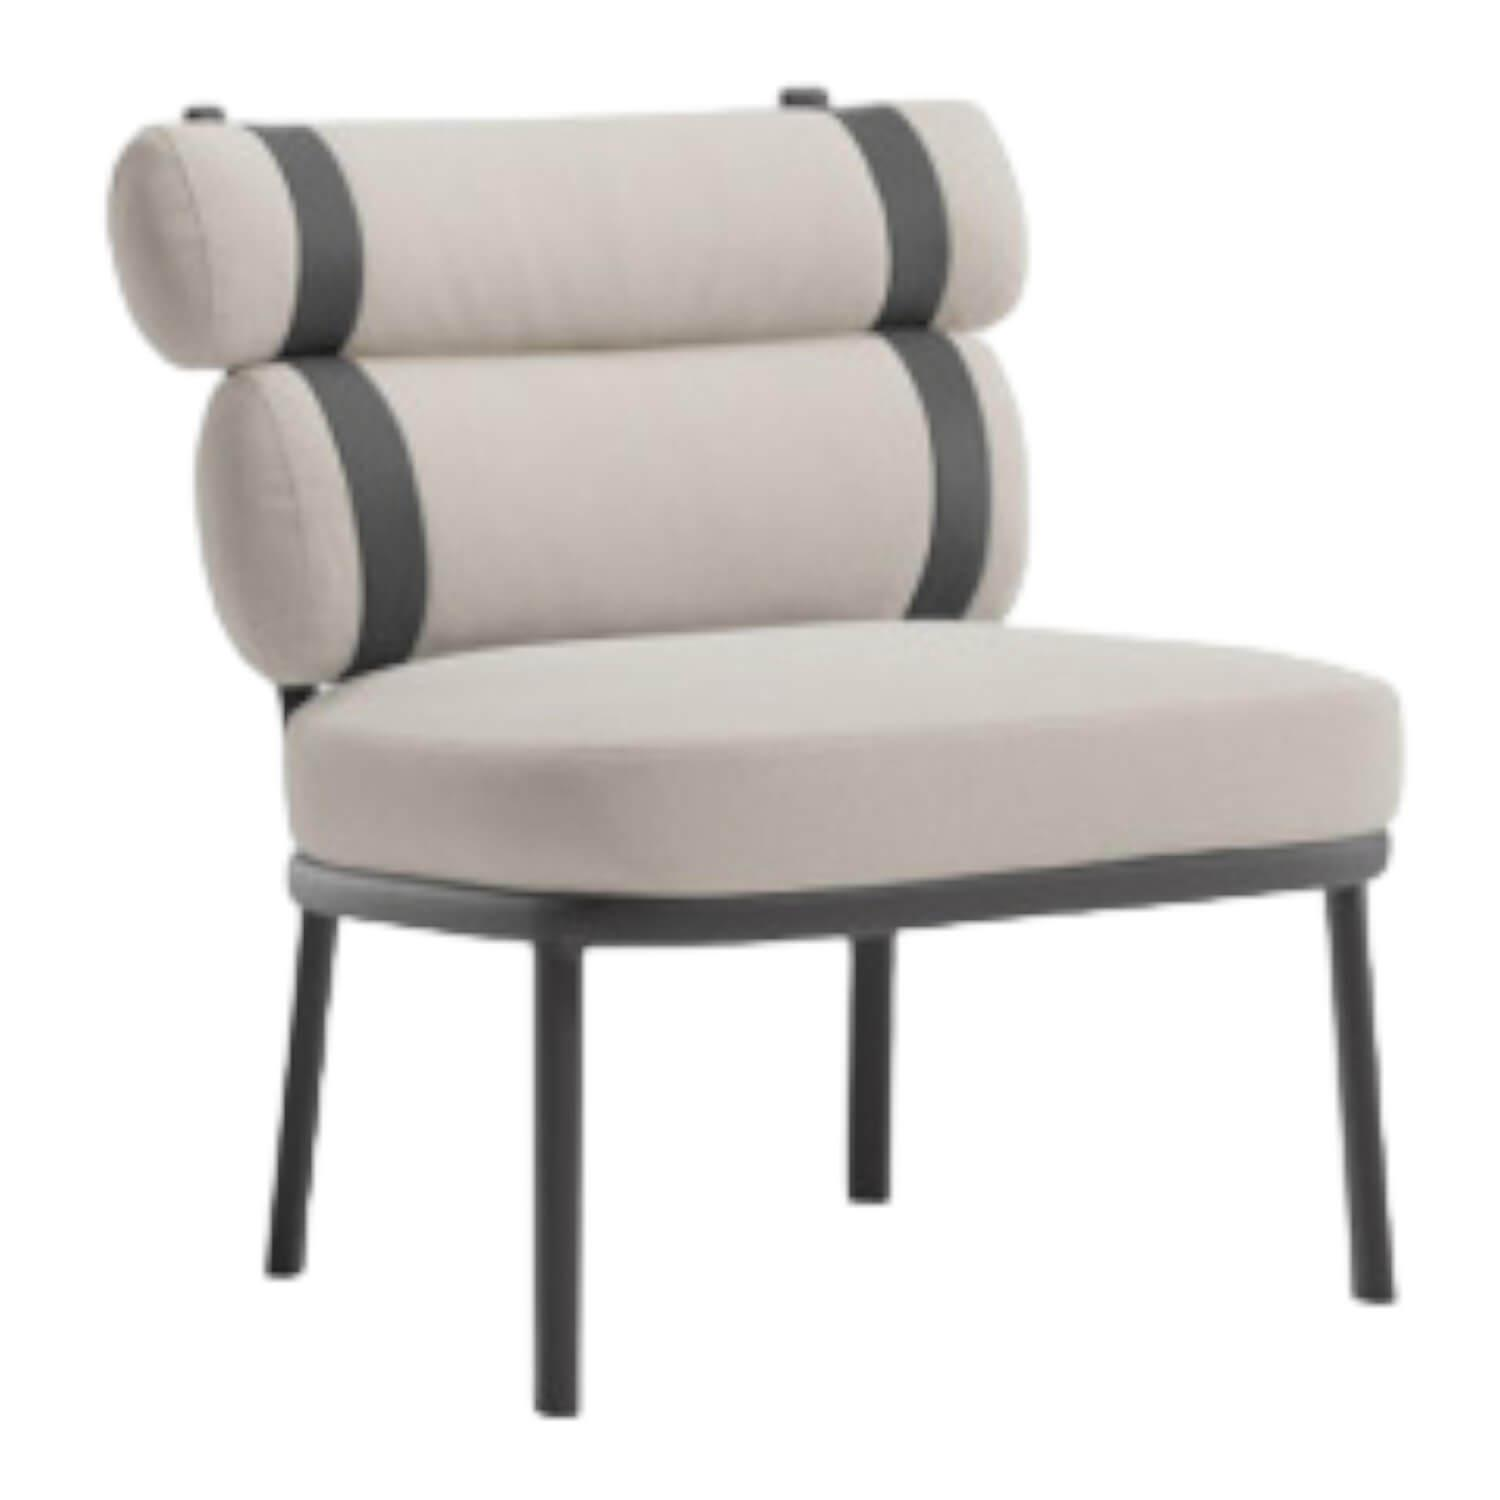 Outdoor-Sessel Roll Stoff Laminiert Farbe Fog Gestell Aluminium